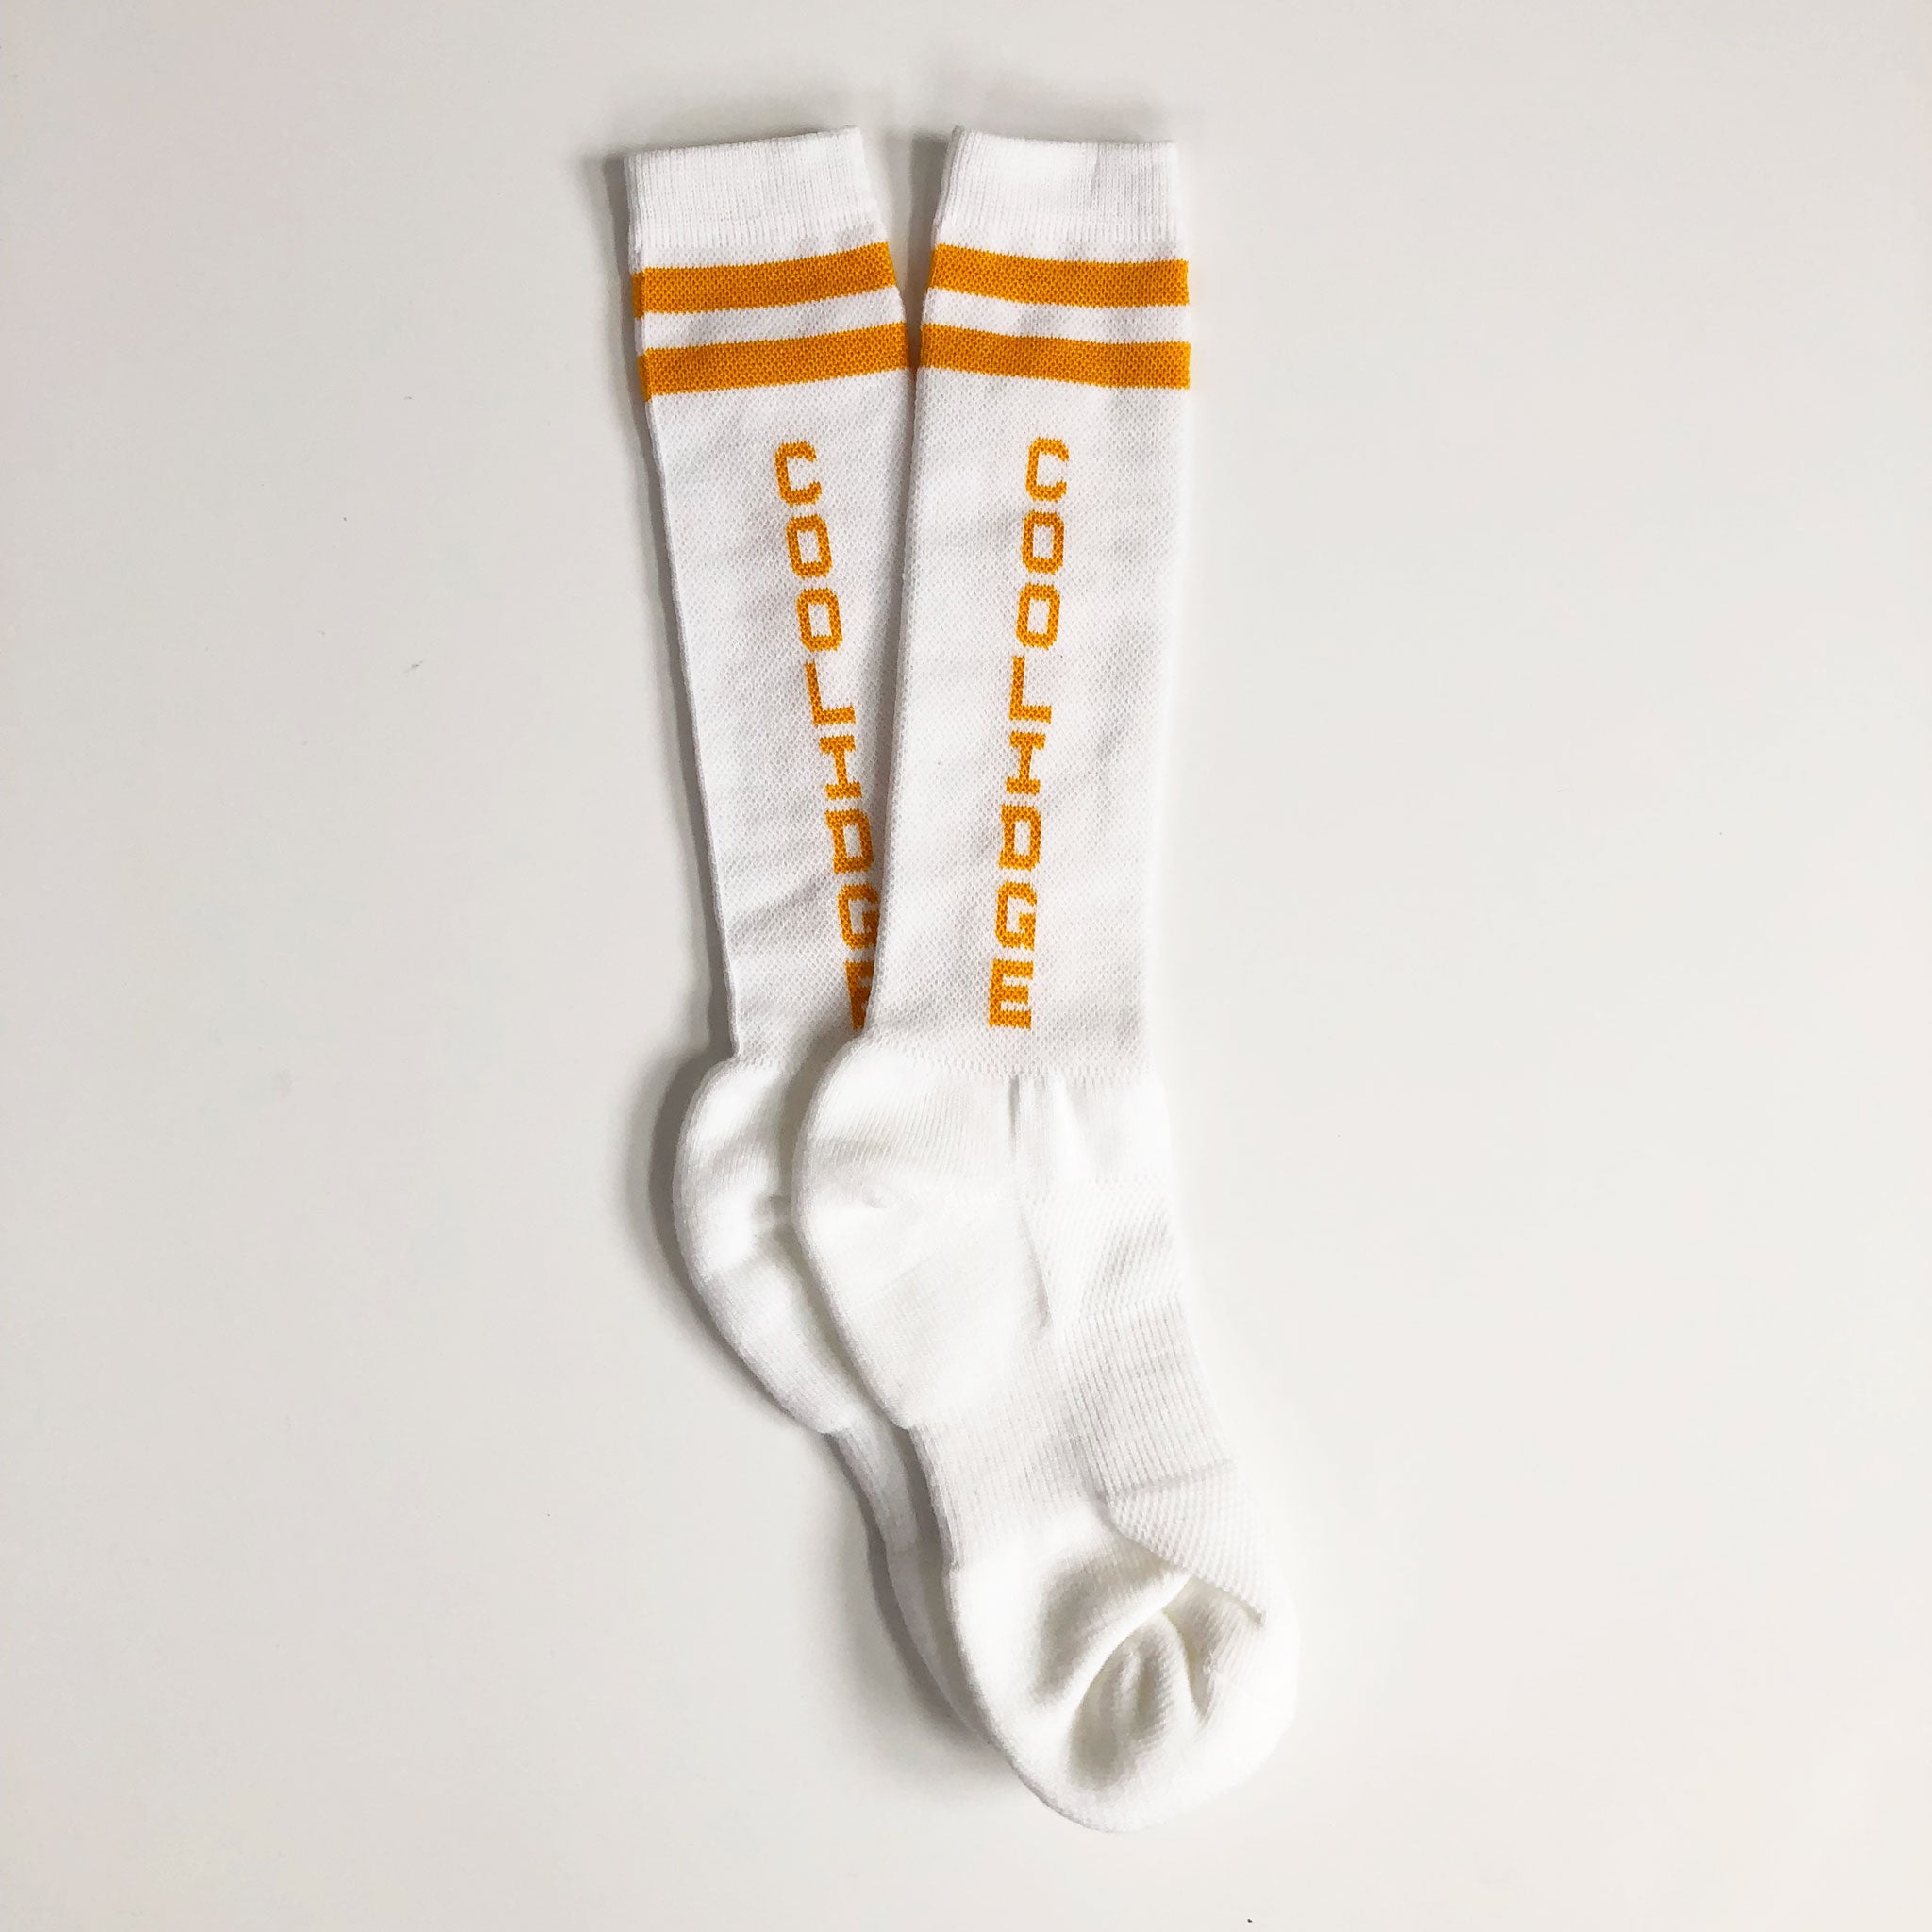 Coolidge Knee-High Socks